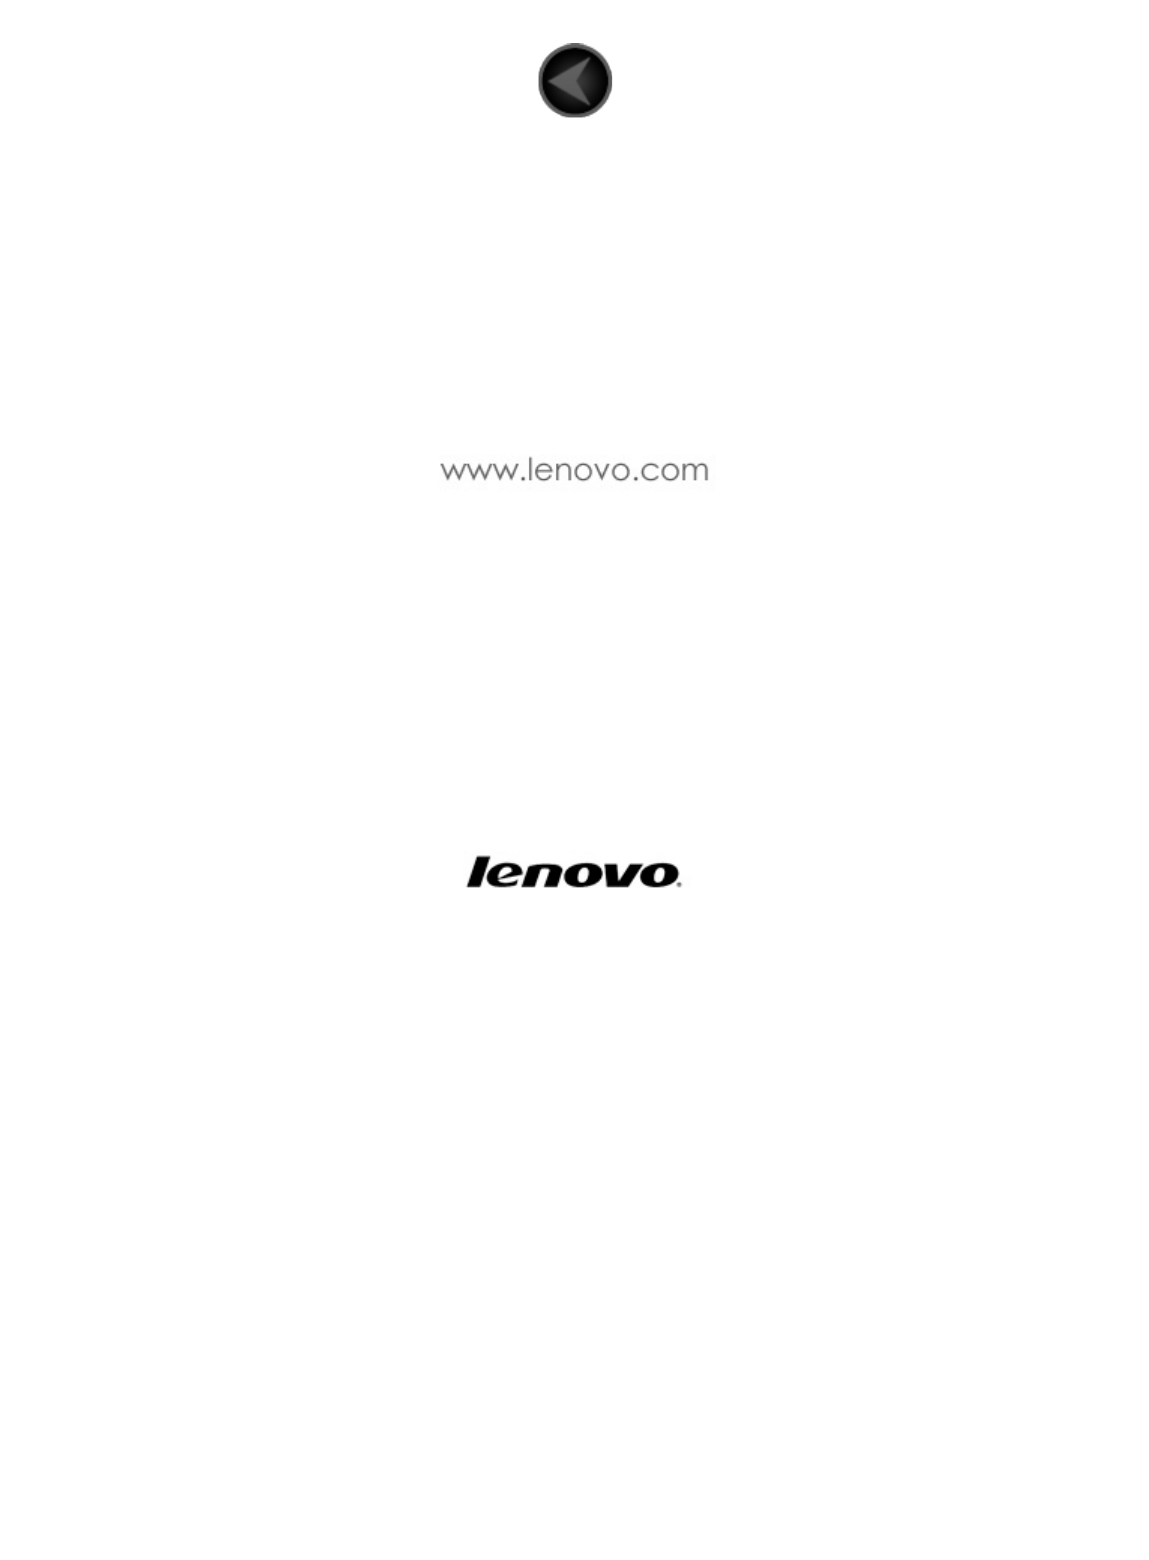 Lenovo Yoga Tablet 8 Ug Wlan3g V1 0 Jp 1315 User Manual ユーザーガイド B6000 Type Z0ah